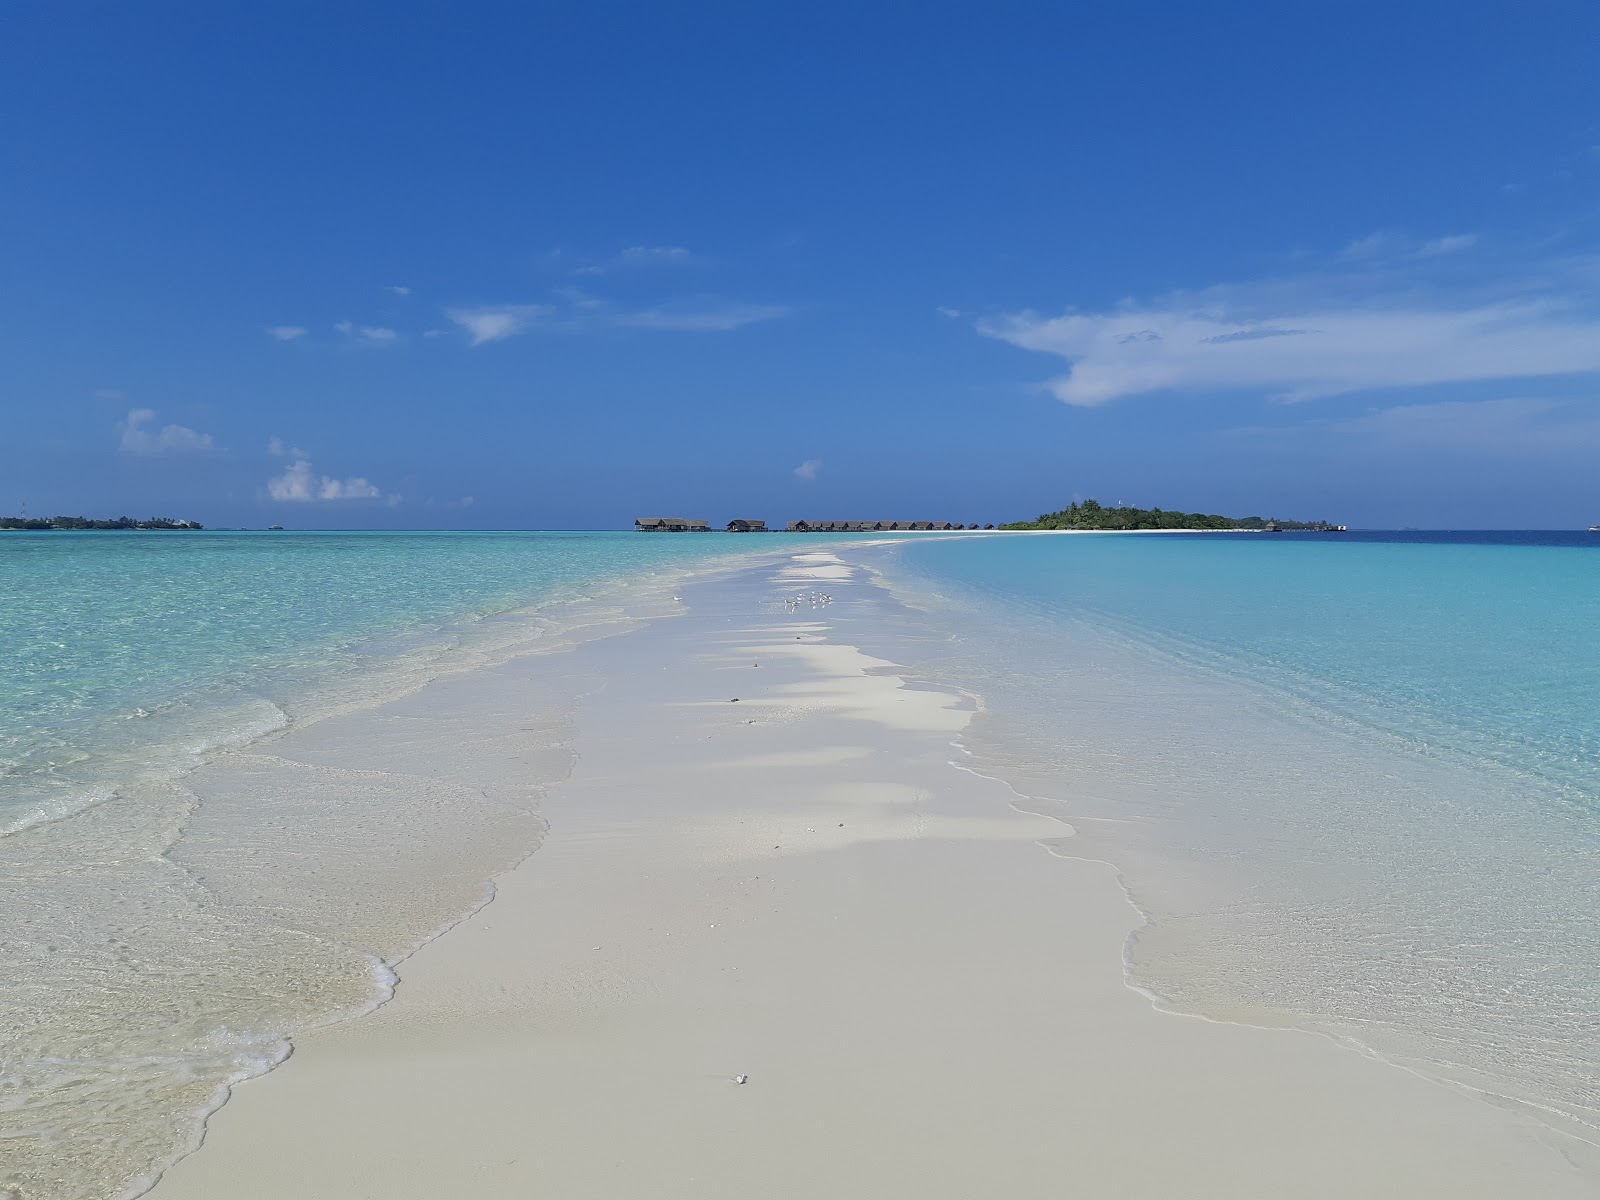 Zdjęcie Como Resort Island z przestronna plaża